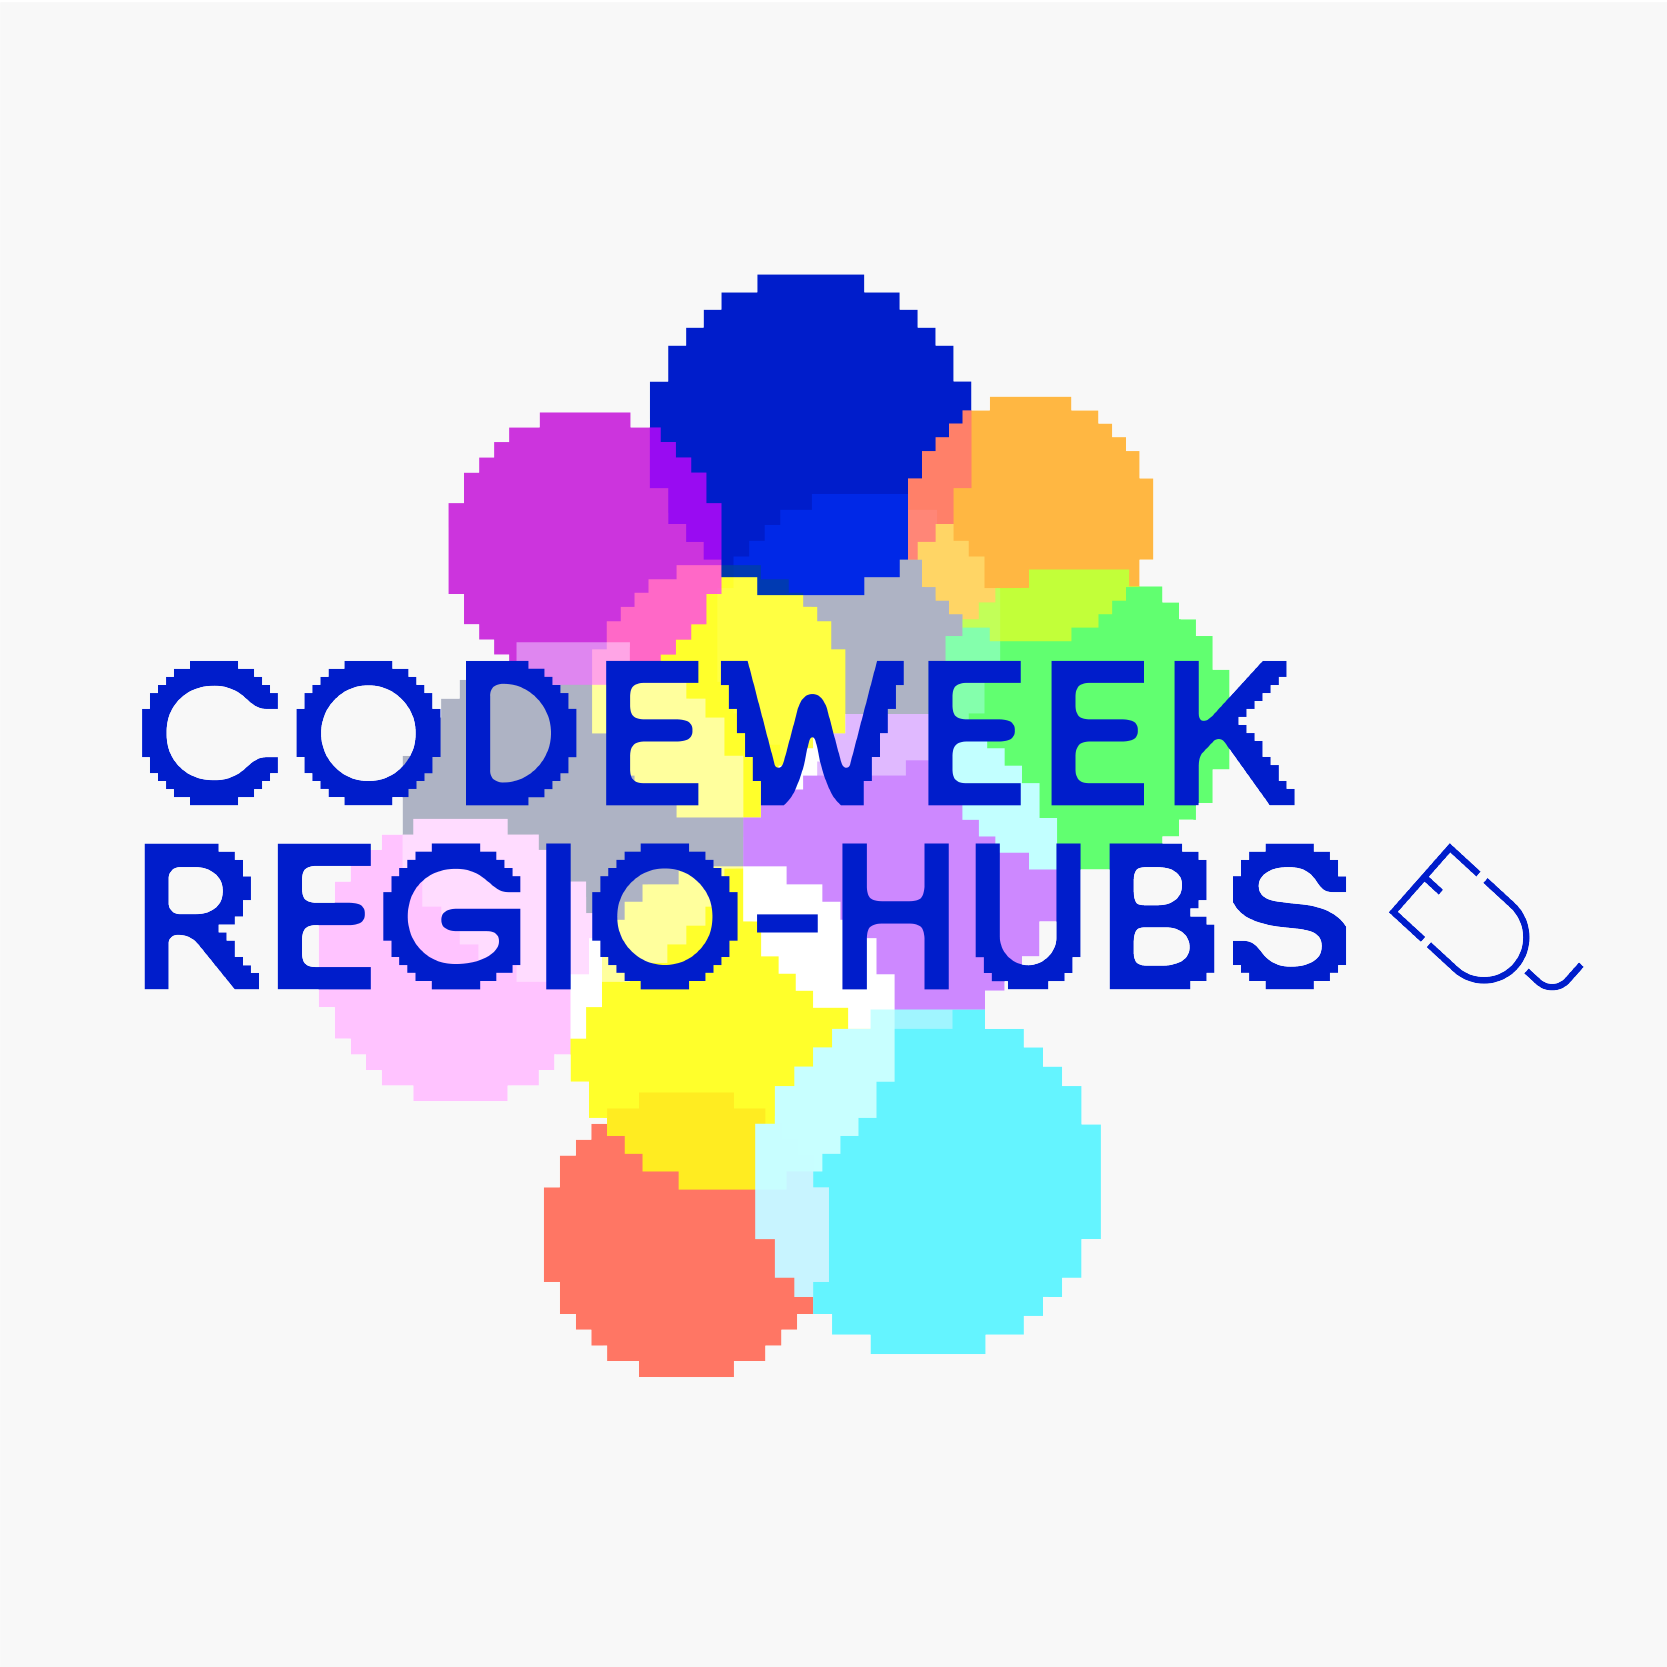 Code Week Regio-Hubs